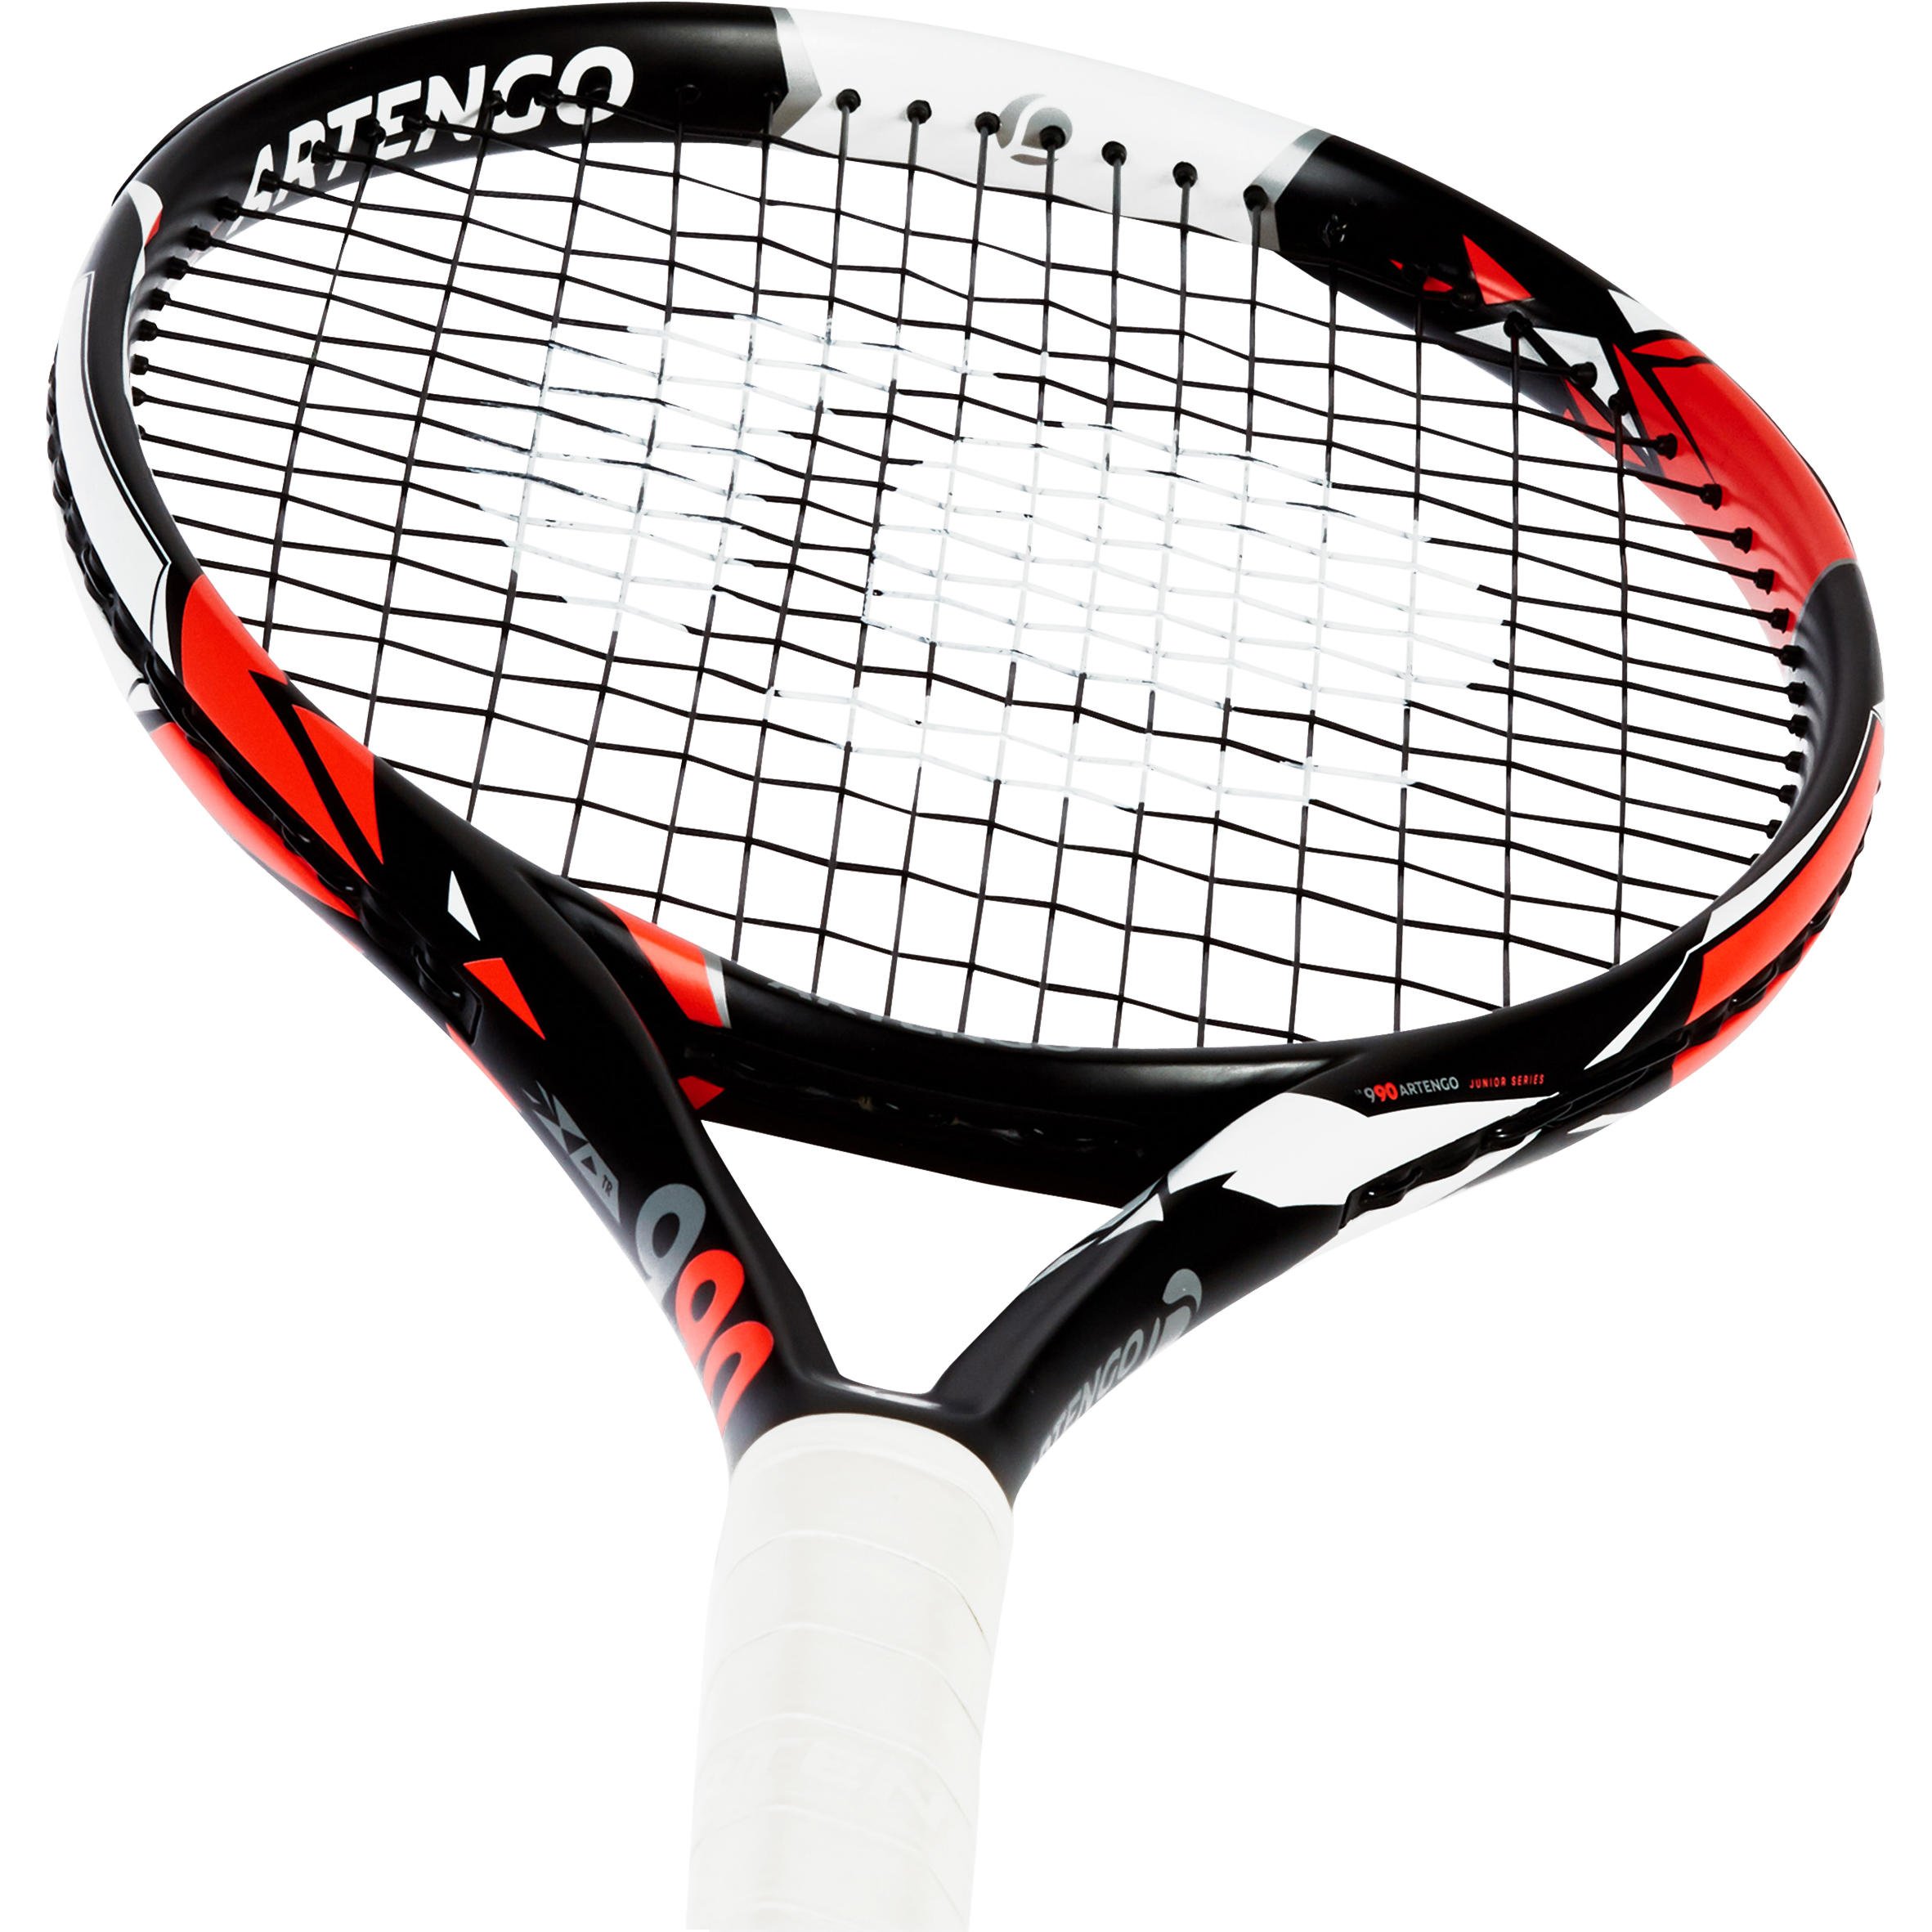 Ракетка для большого тенниса взрослая. Babolat 24 ракетка размера. ARTENGO ракетки для большого тенниса. Ракетка Декатлон для большого тенниса. Ракетка для большого тенниса ARTENGO 7 Series.